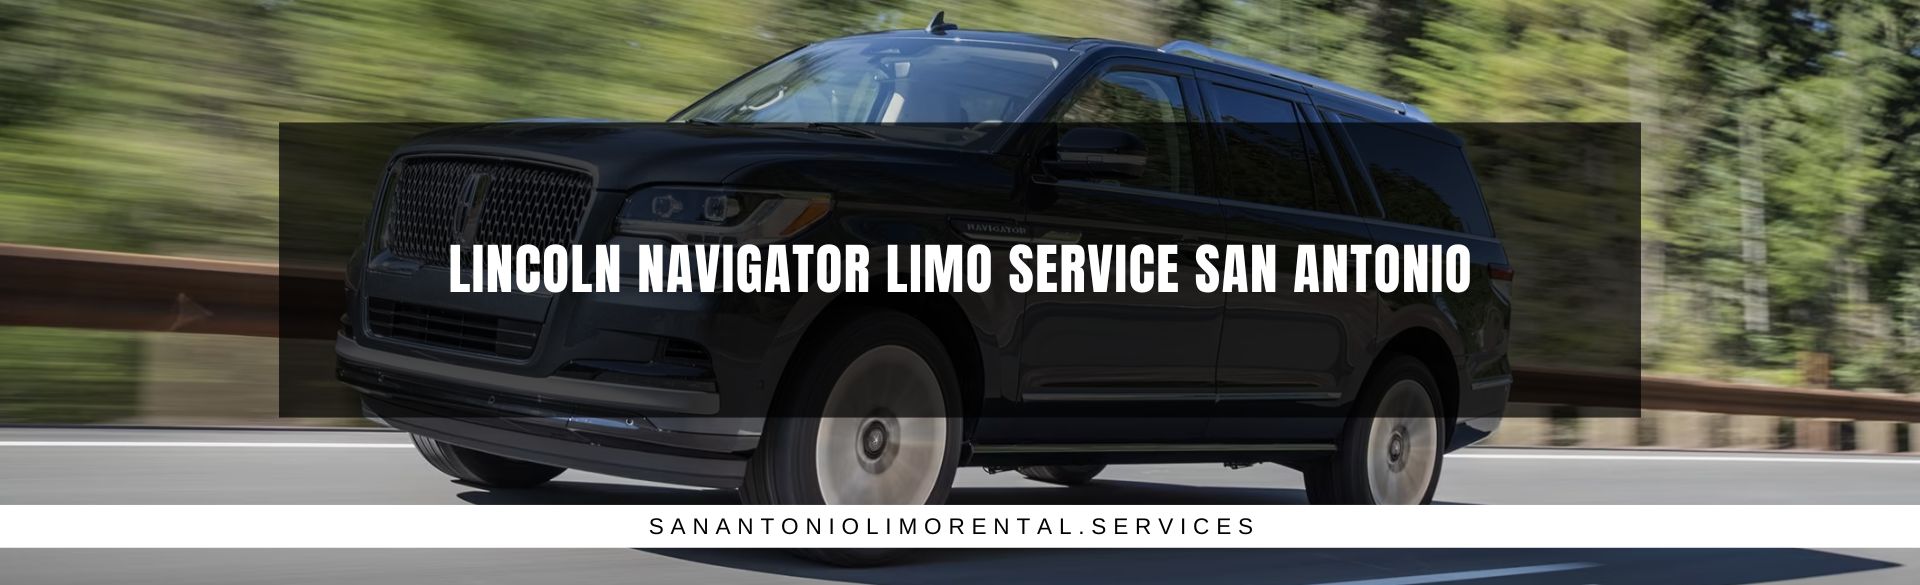 Lincoln Navigator Limo Service San Antonio